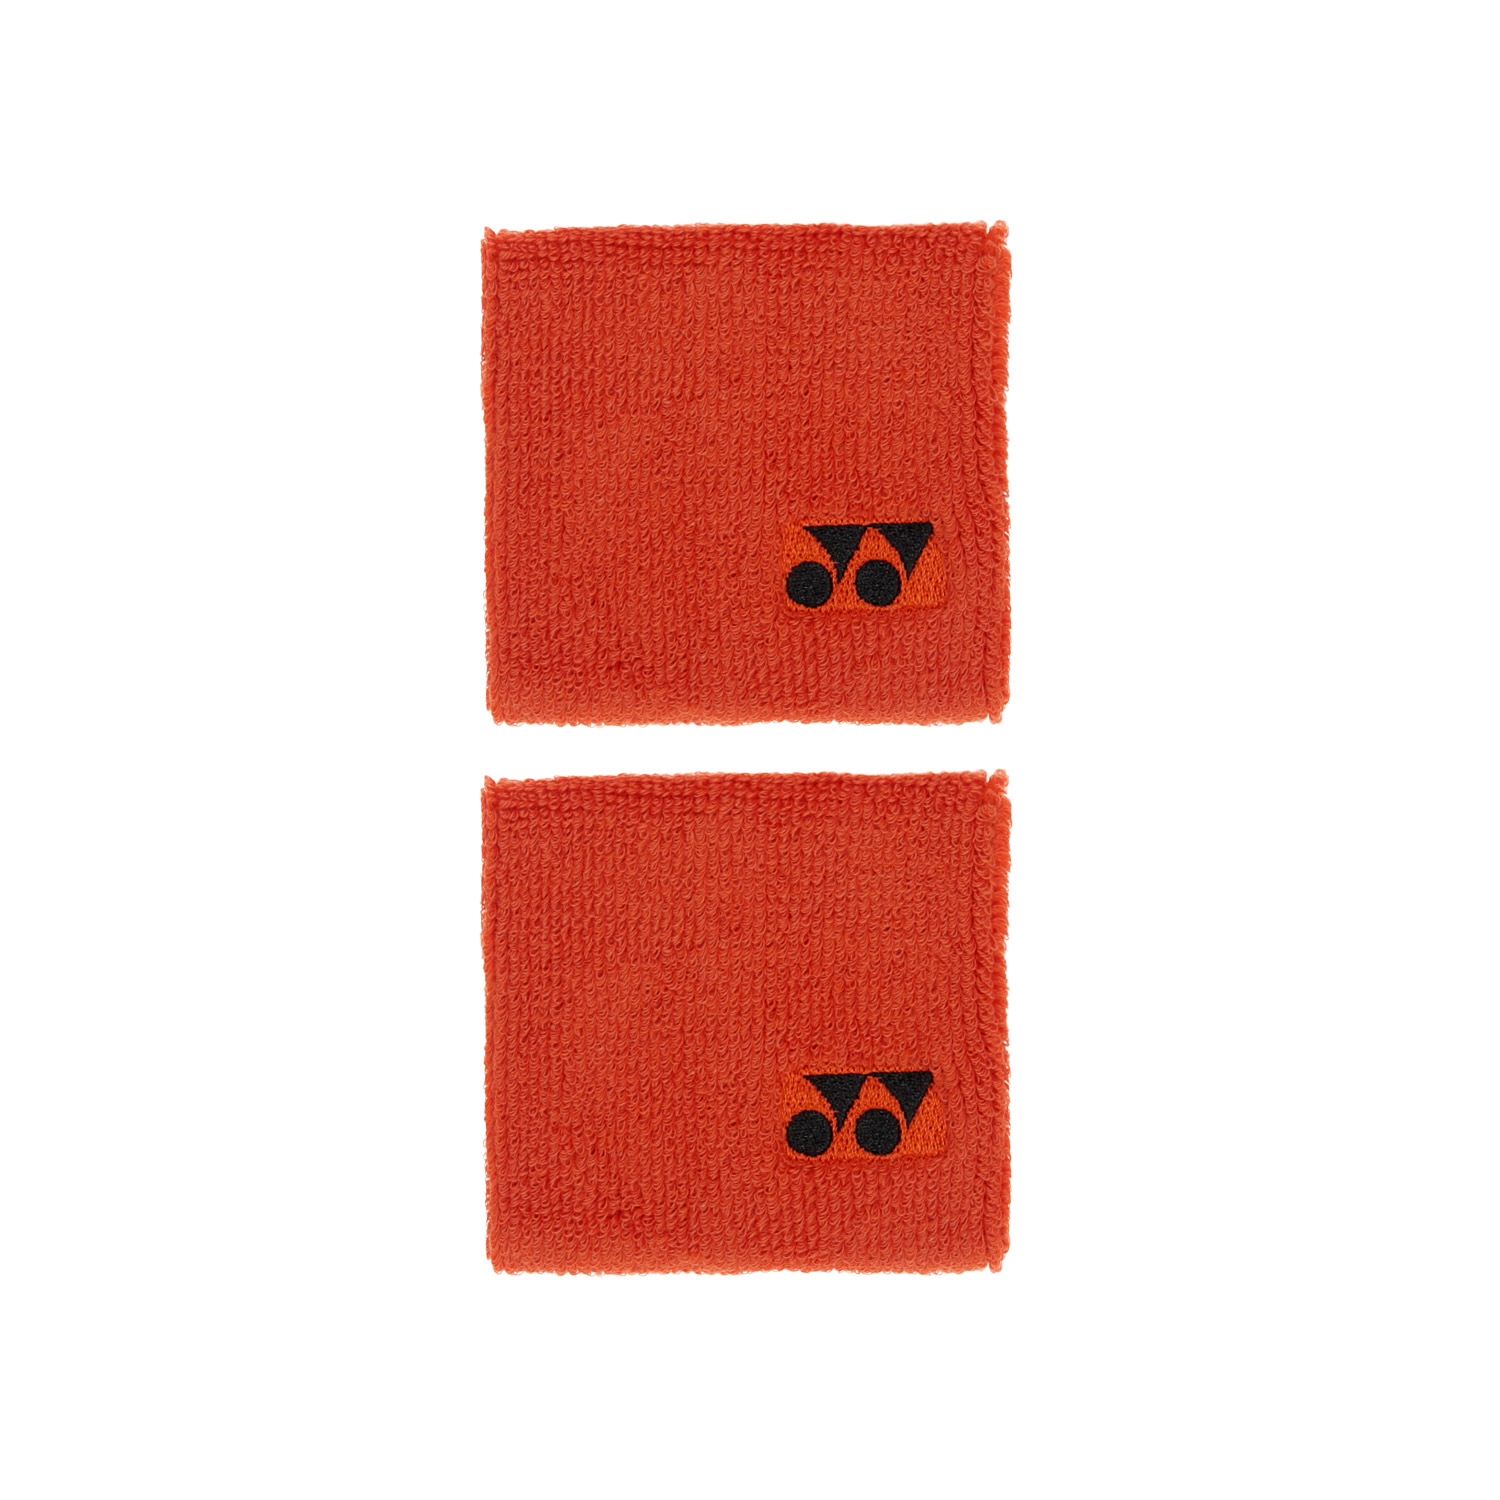 Yonex Logo Polsini Corti - Orange